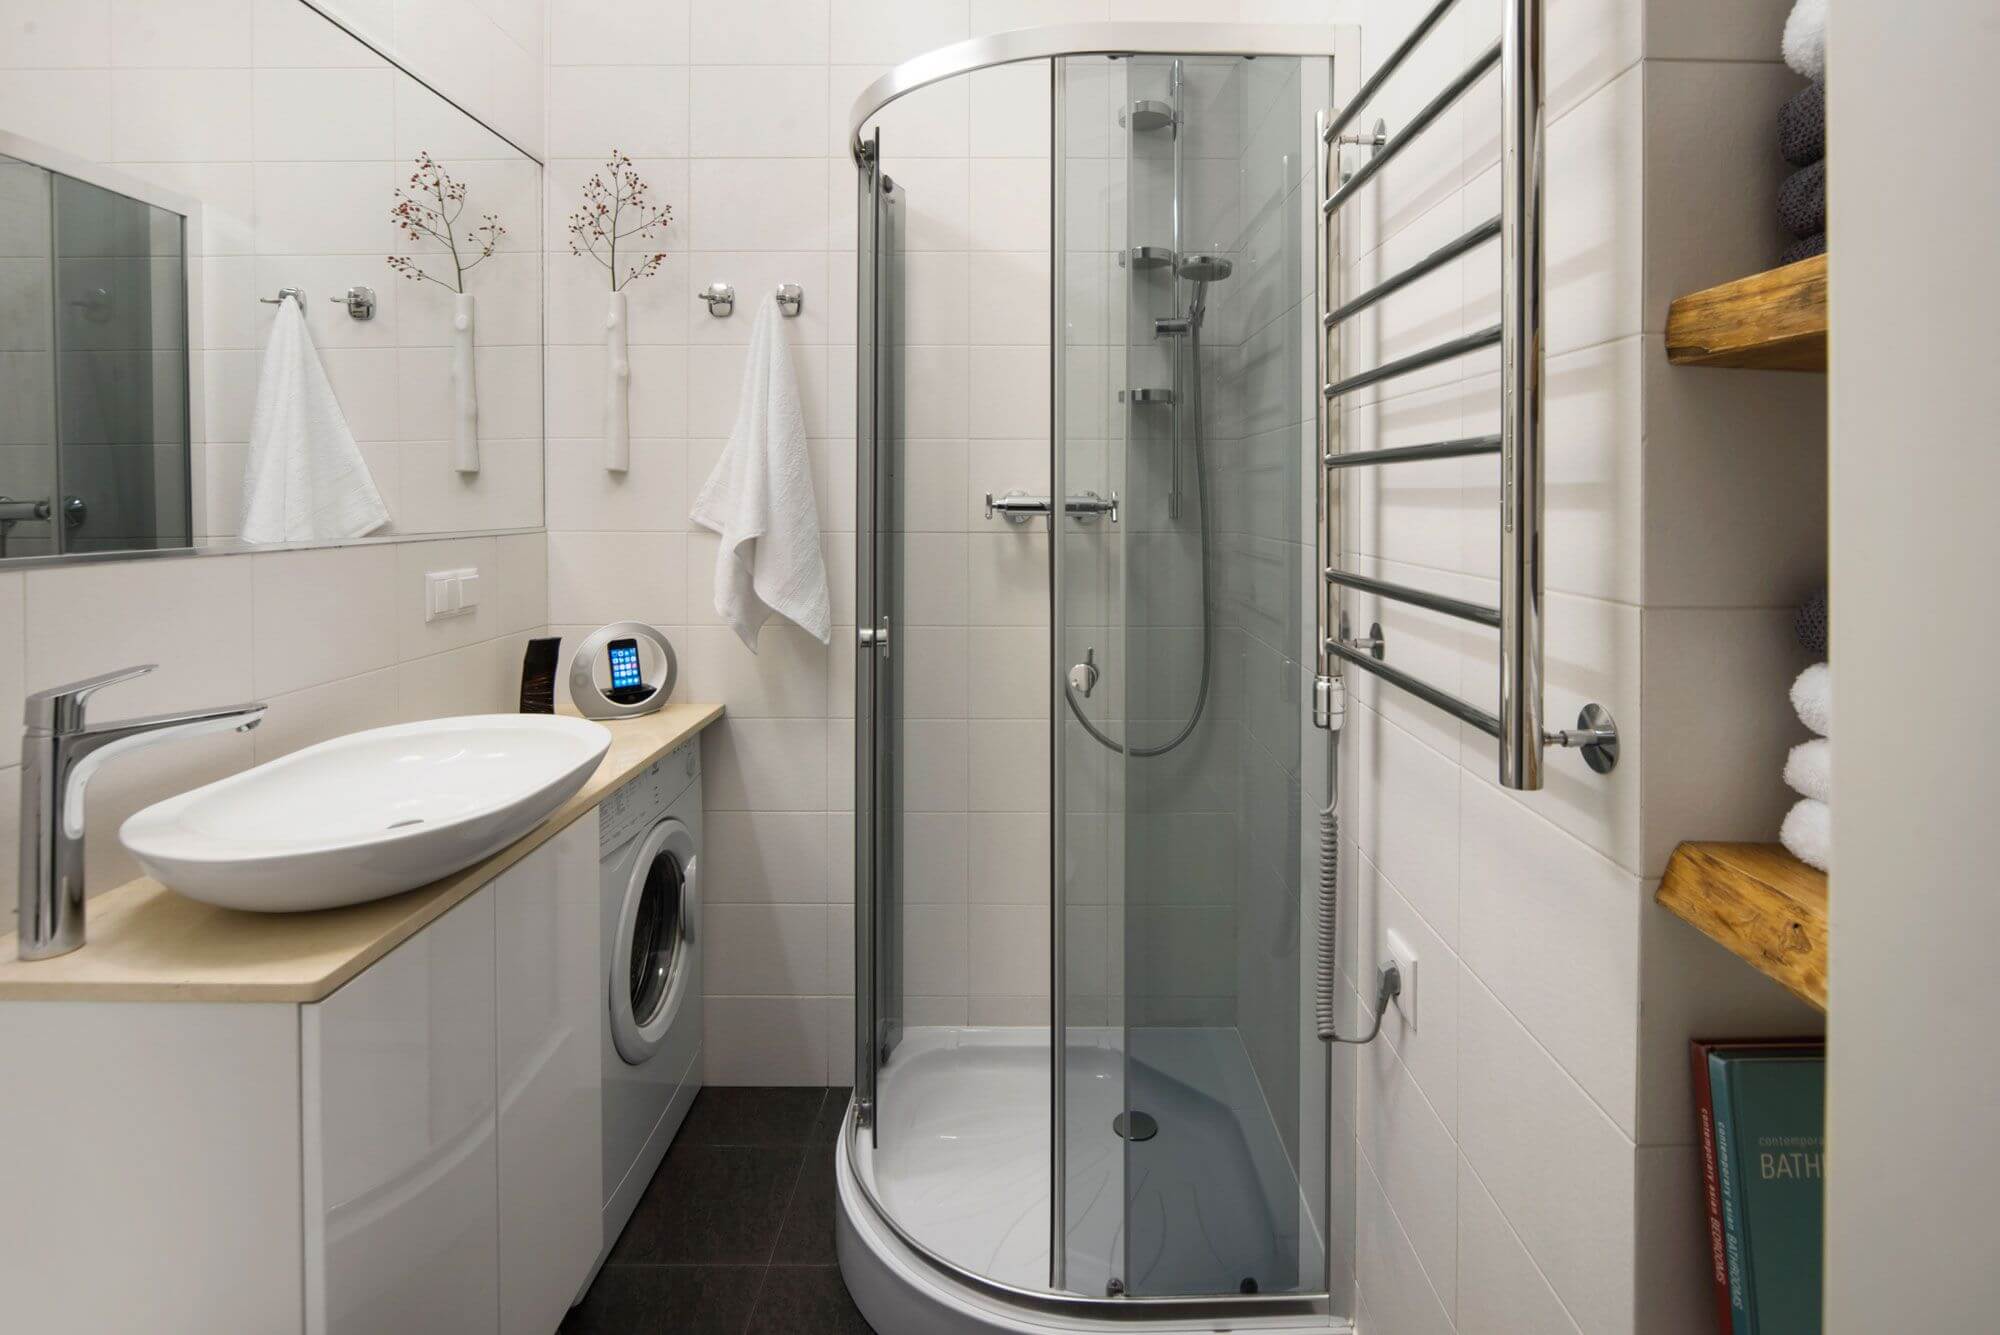 Маленькая ванная комната с душевой кабиной и стиральной машиной - варианты расположения